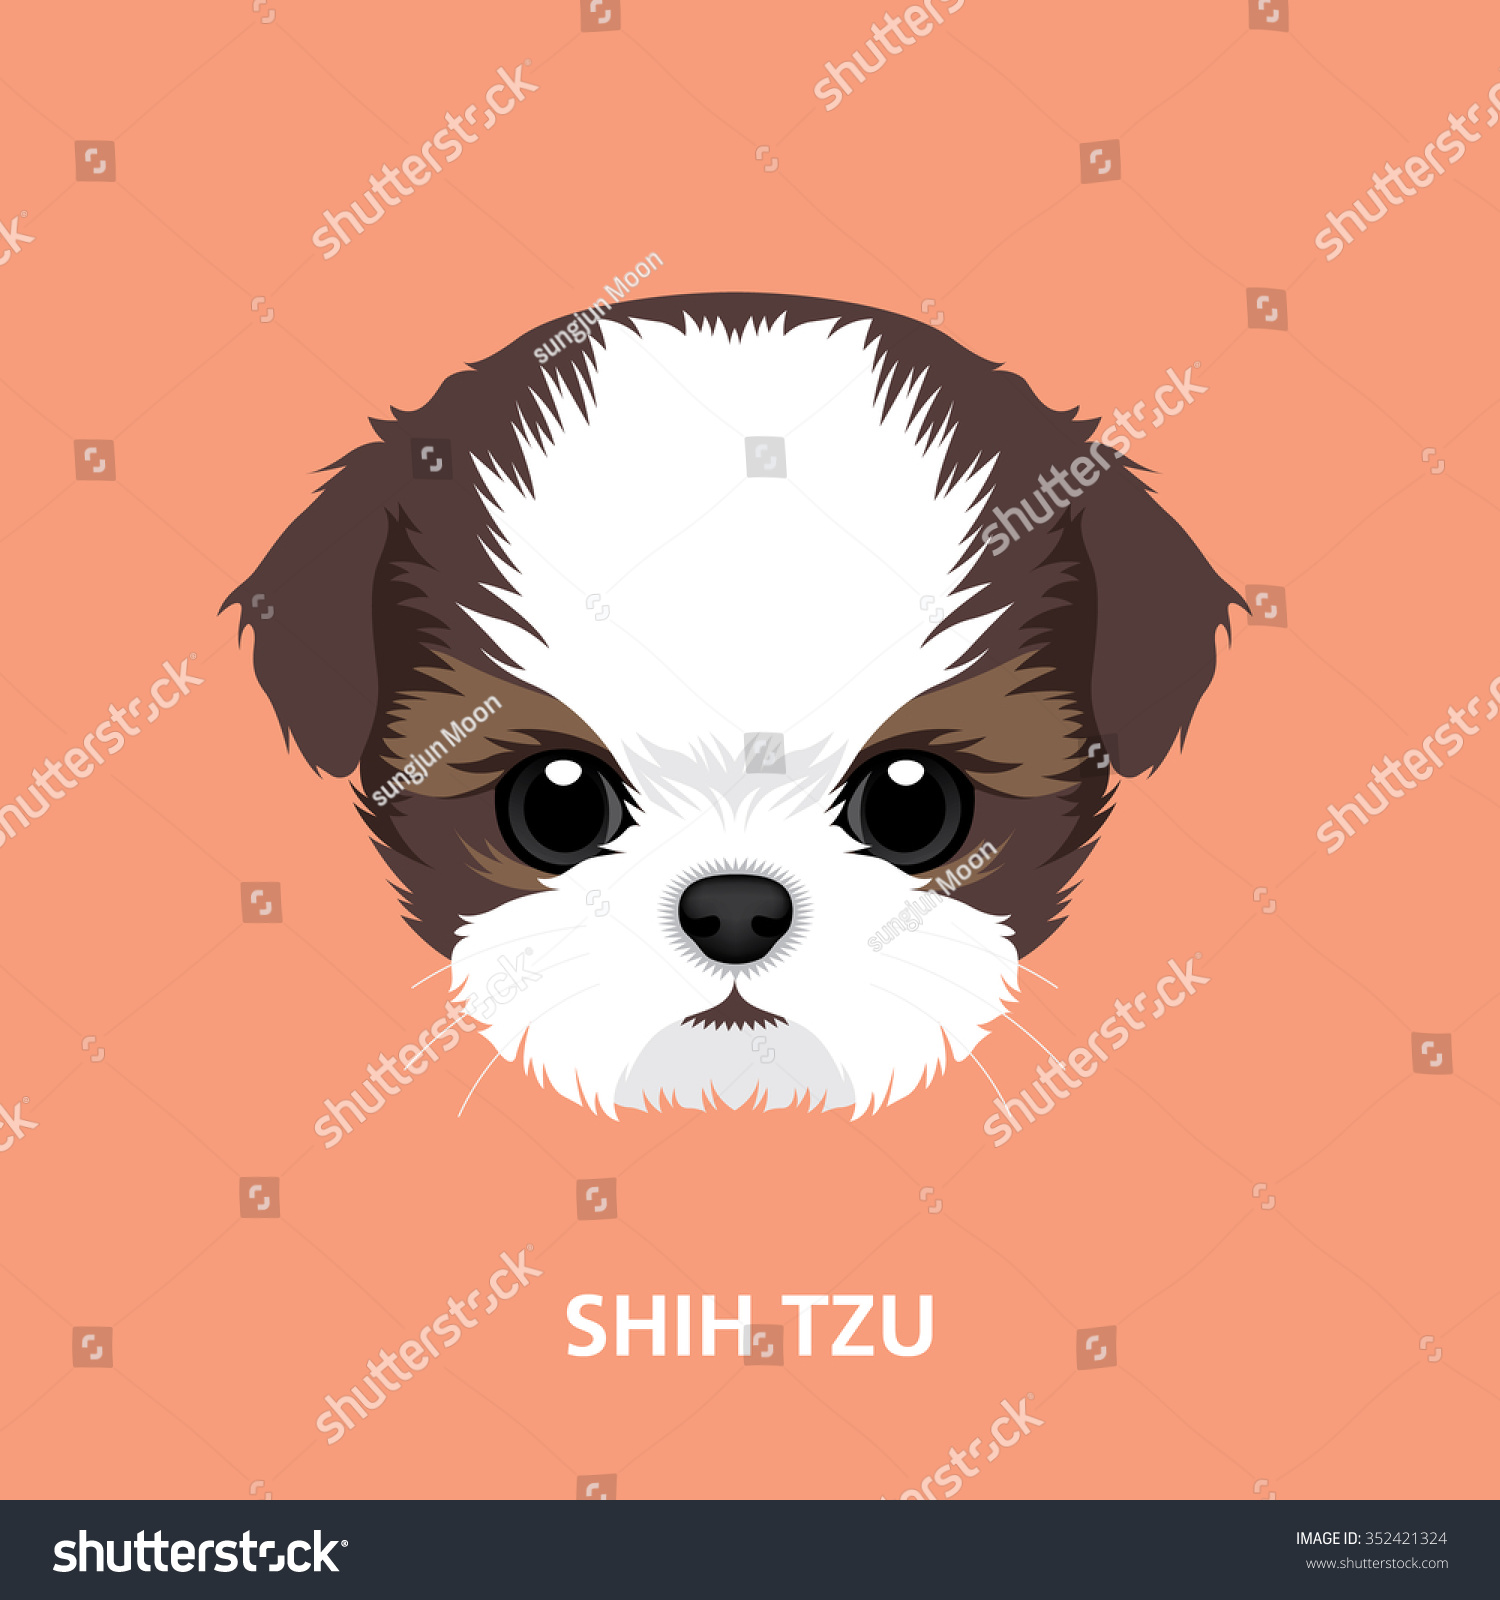 SVG of Vector Illustration Portrait of Shih-tzu Puppy. art of dog face svg